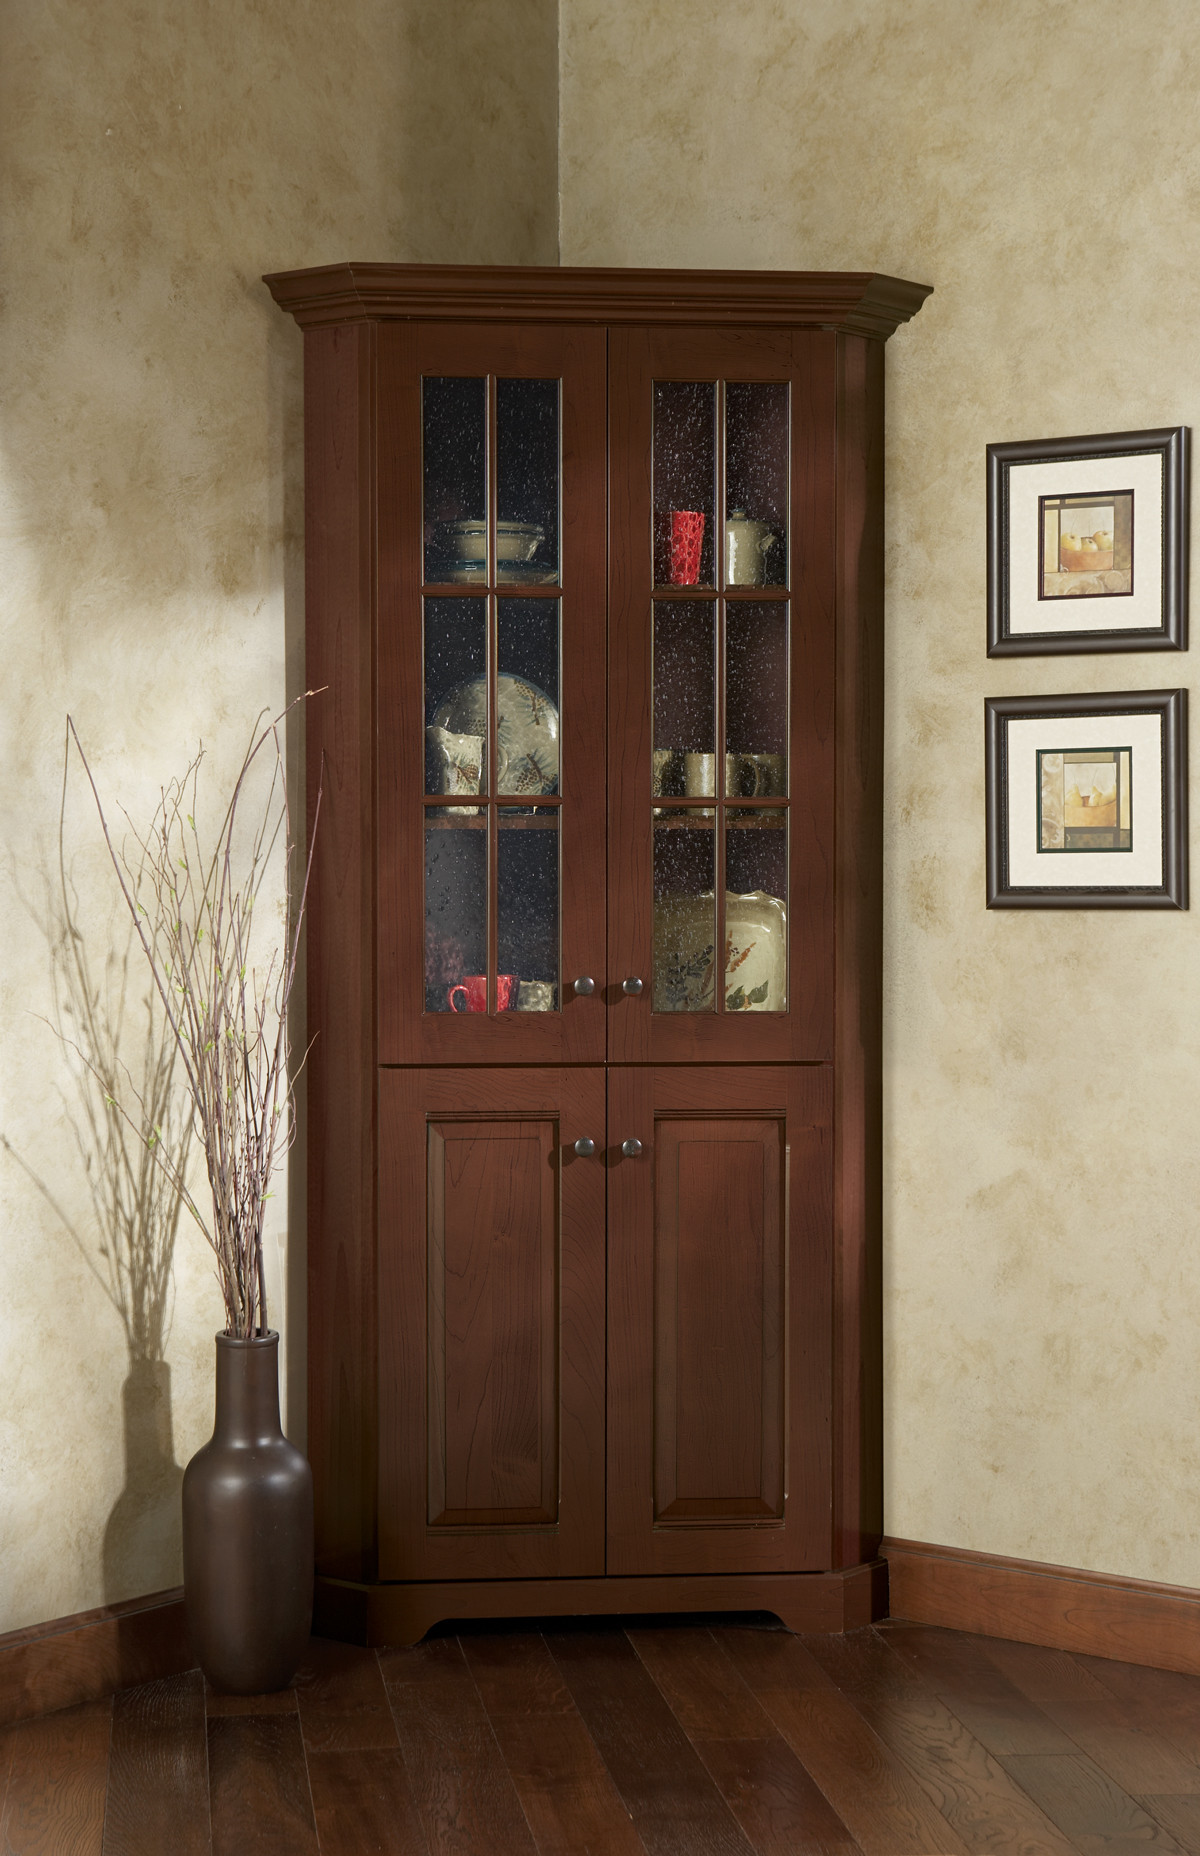 Corner Storage Cabinet For Bedroom
 Corner Cabinet With Glass Doors – HomesFeed